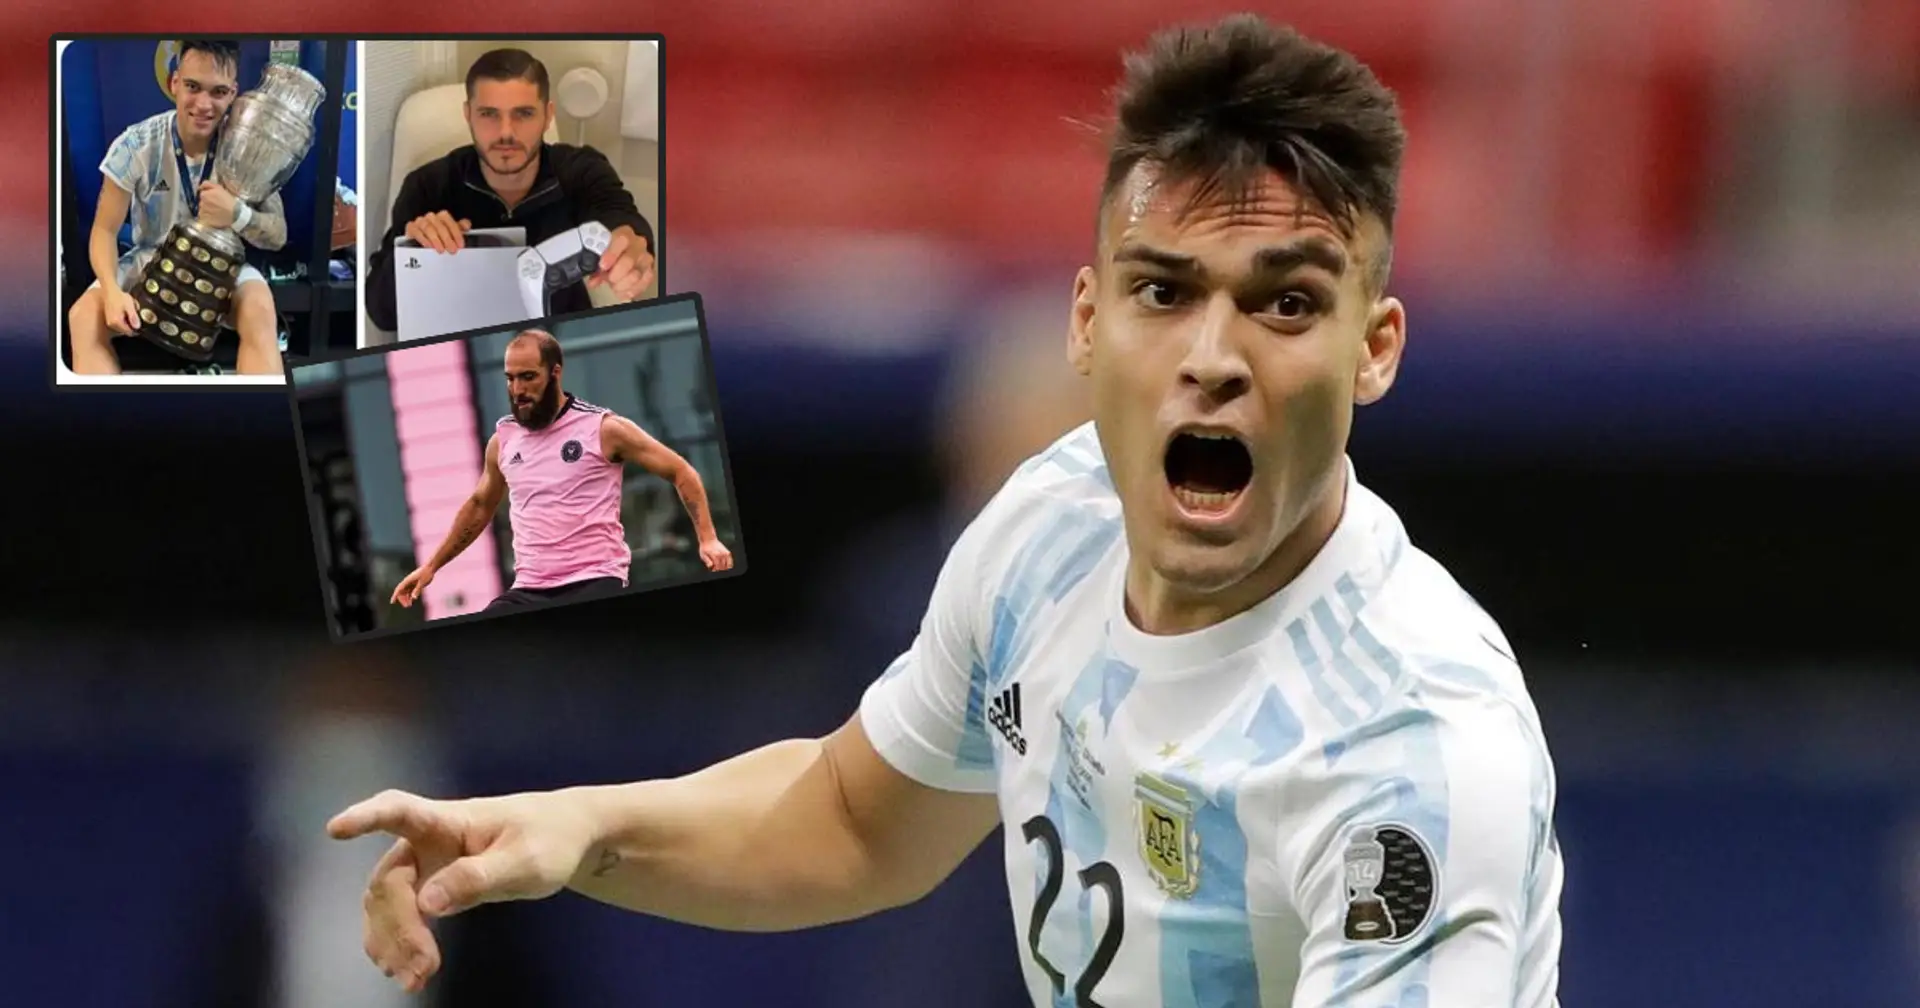 "Icardi chi? Ah no, forse era Higuain!": i tifosi dell'Inter esultano per questo 'doppio successo' di Lautaro Martinez